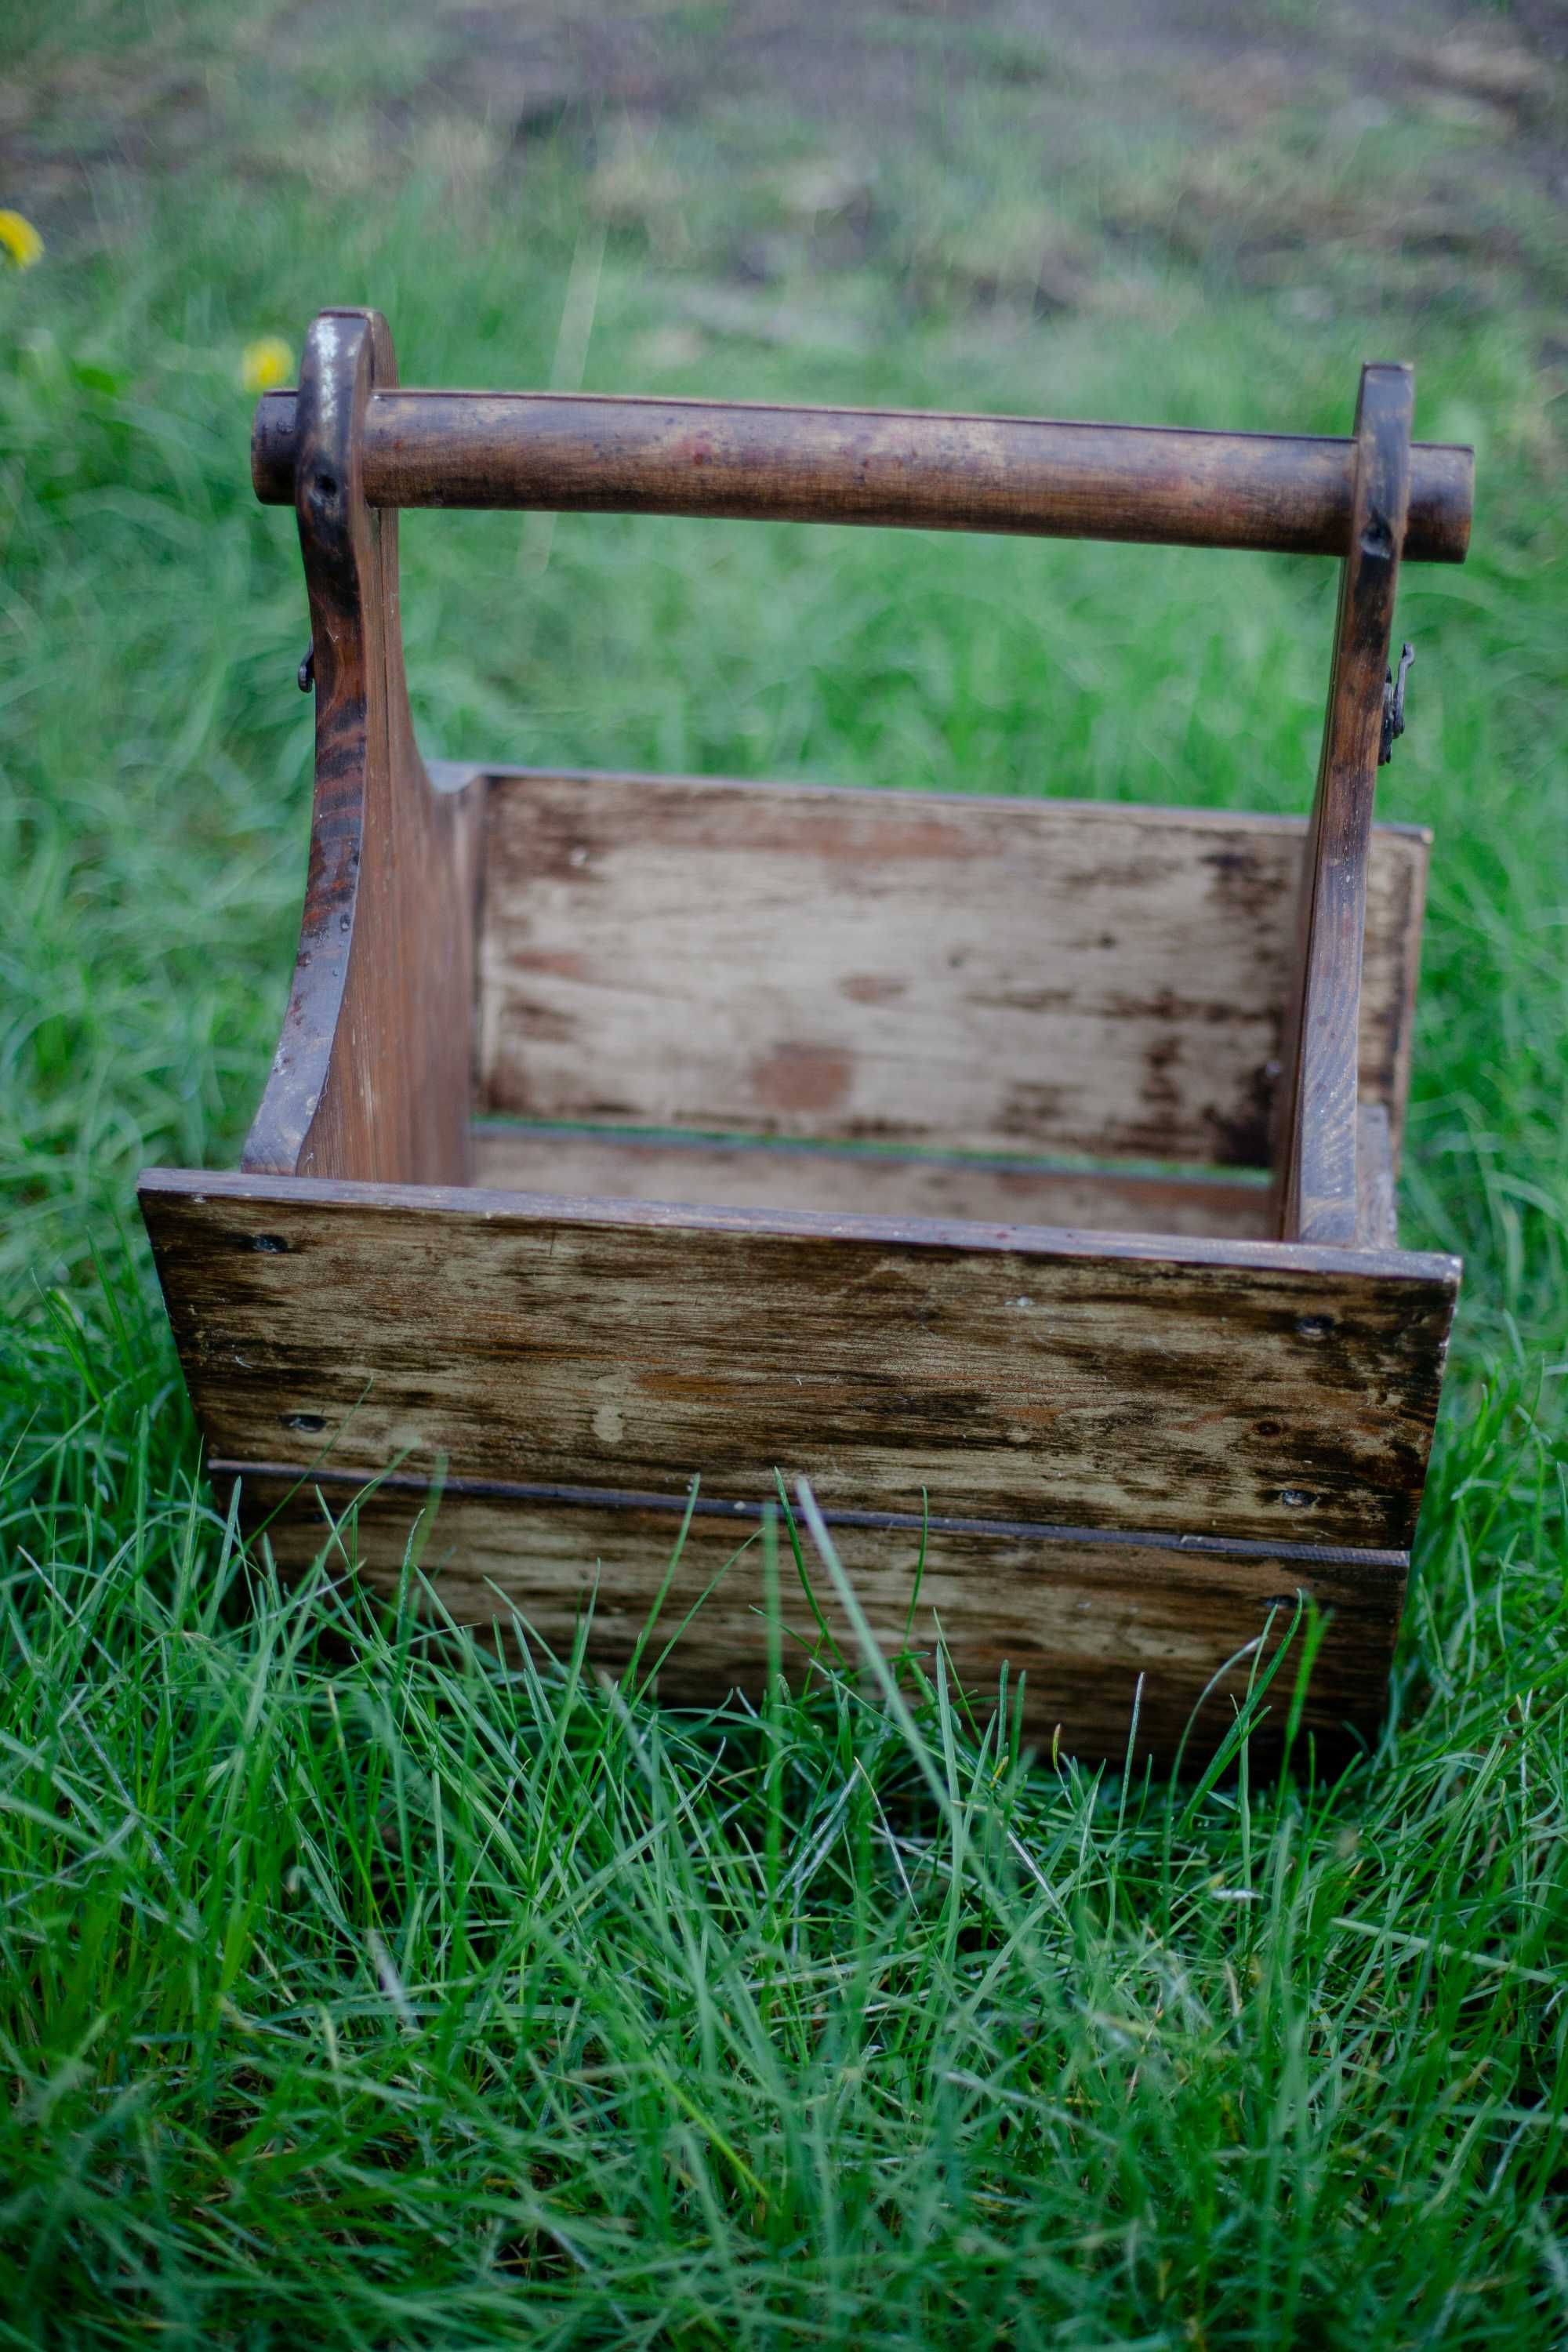 Дерев'яний розкладний стіл-кошик для пікніка